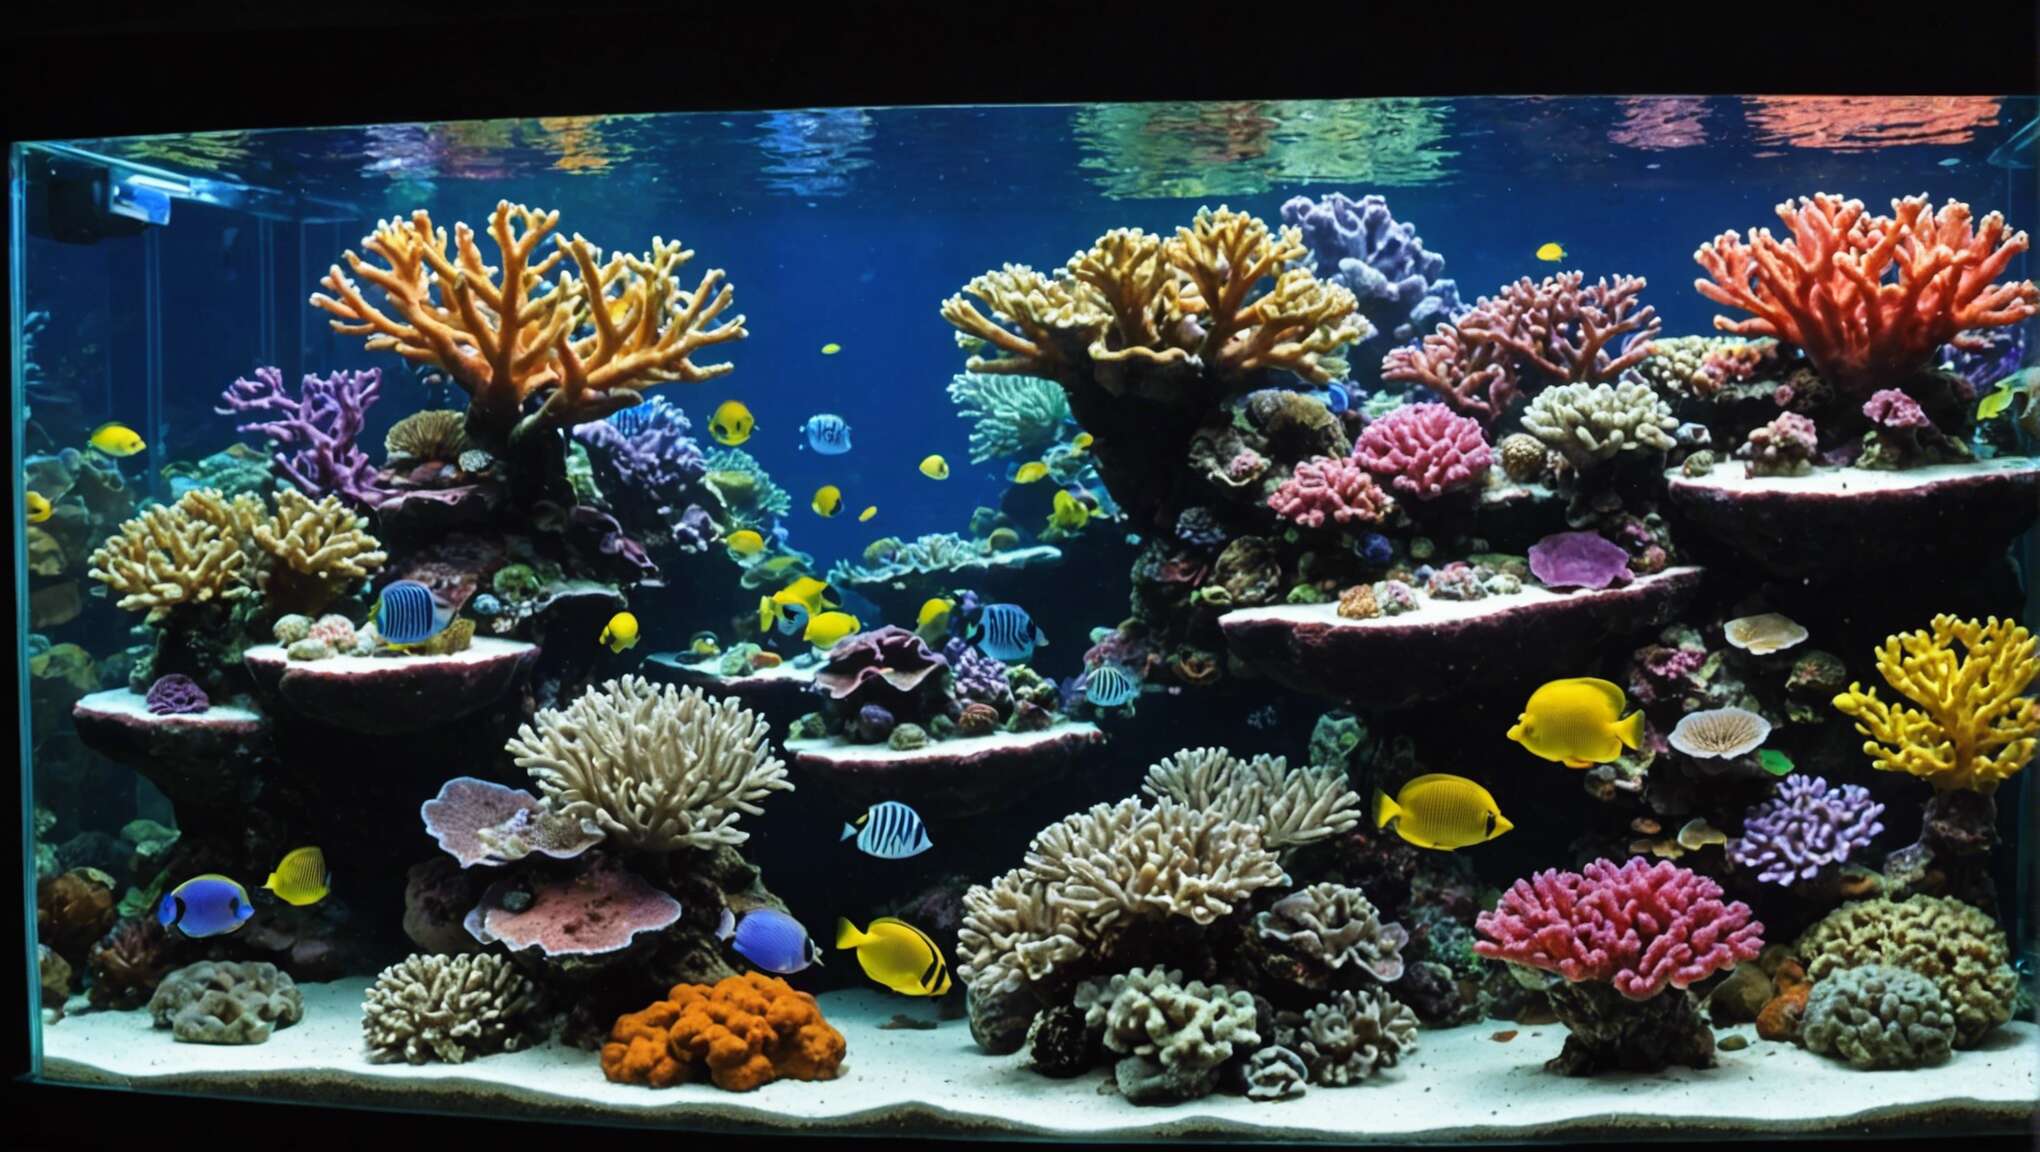 Installation de l'éclairage d'aquarium : étapes et astuces pour une mise en valeur optimale des coraux